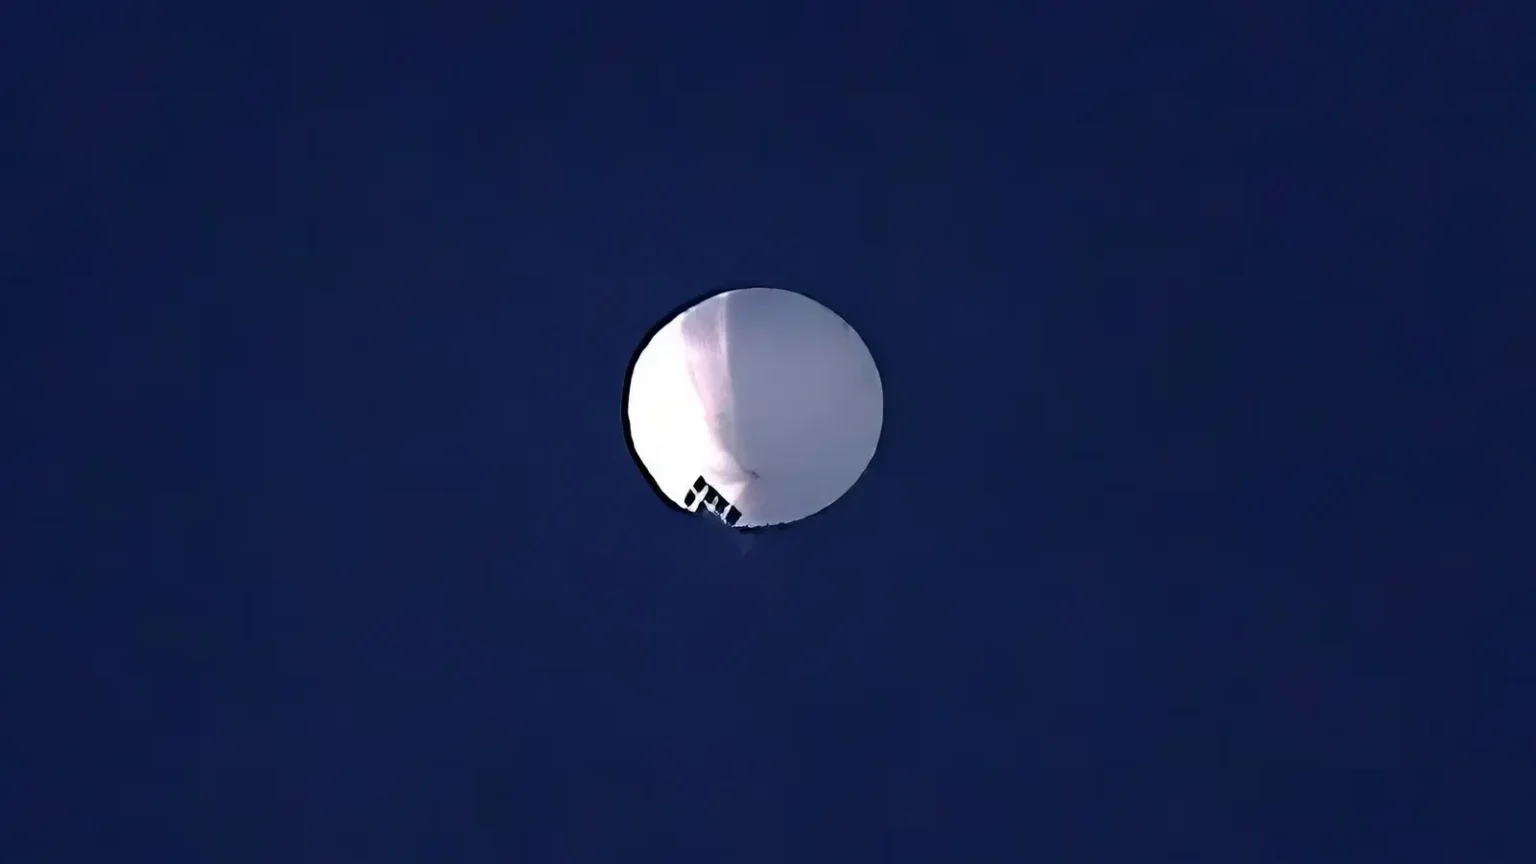 us-intercepts-non-threat-small-balloon-over-utah